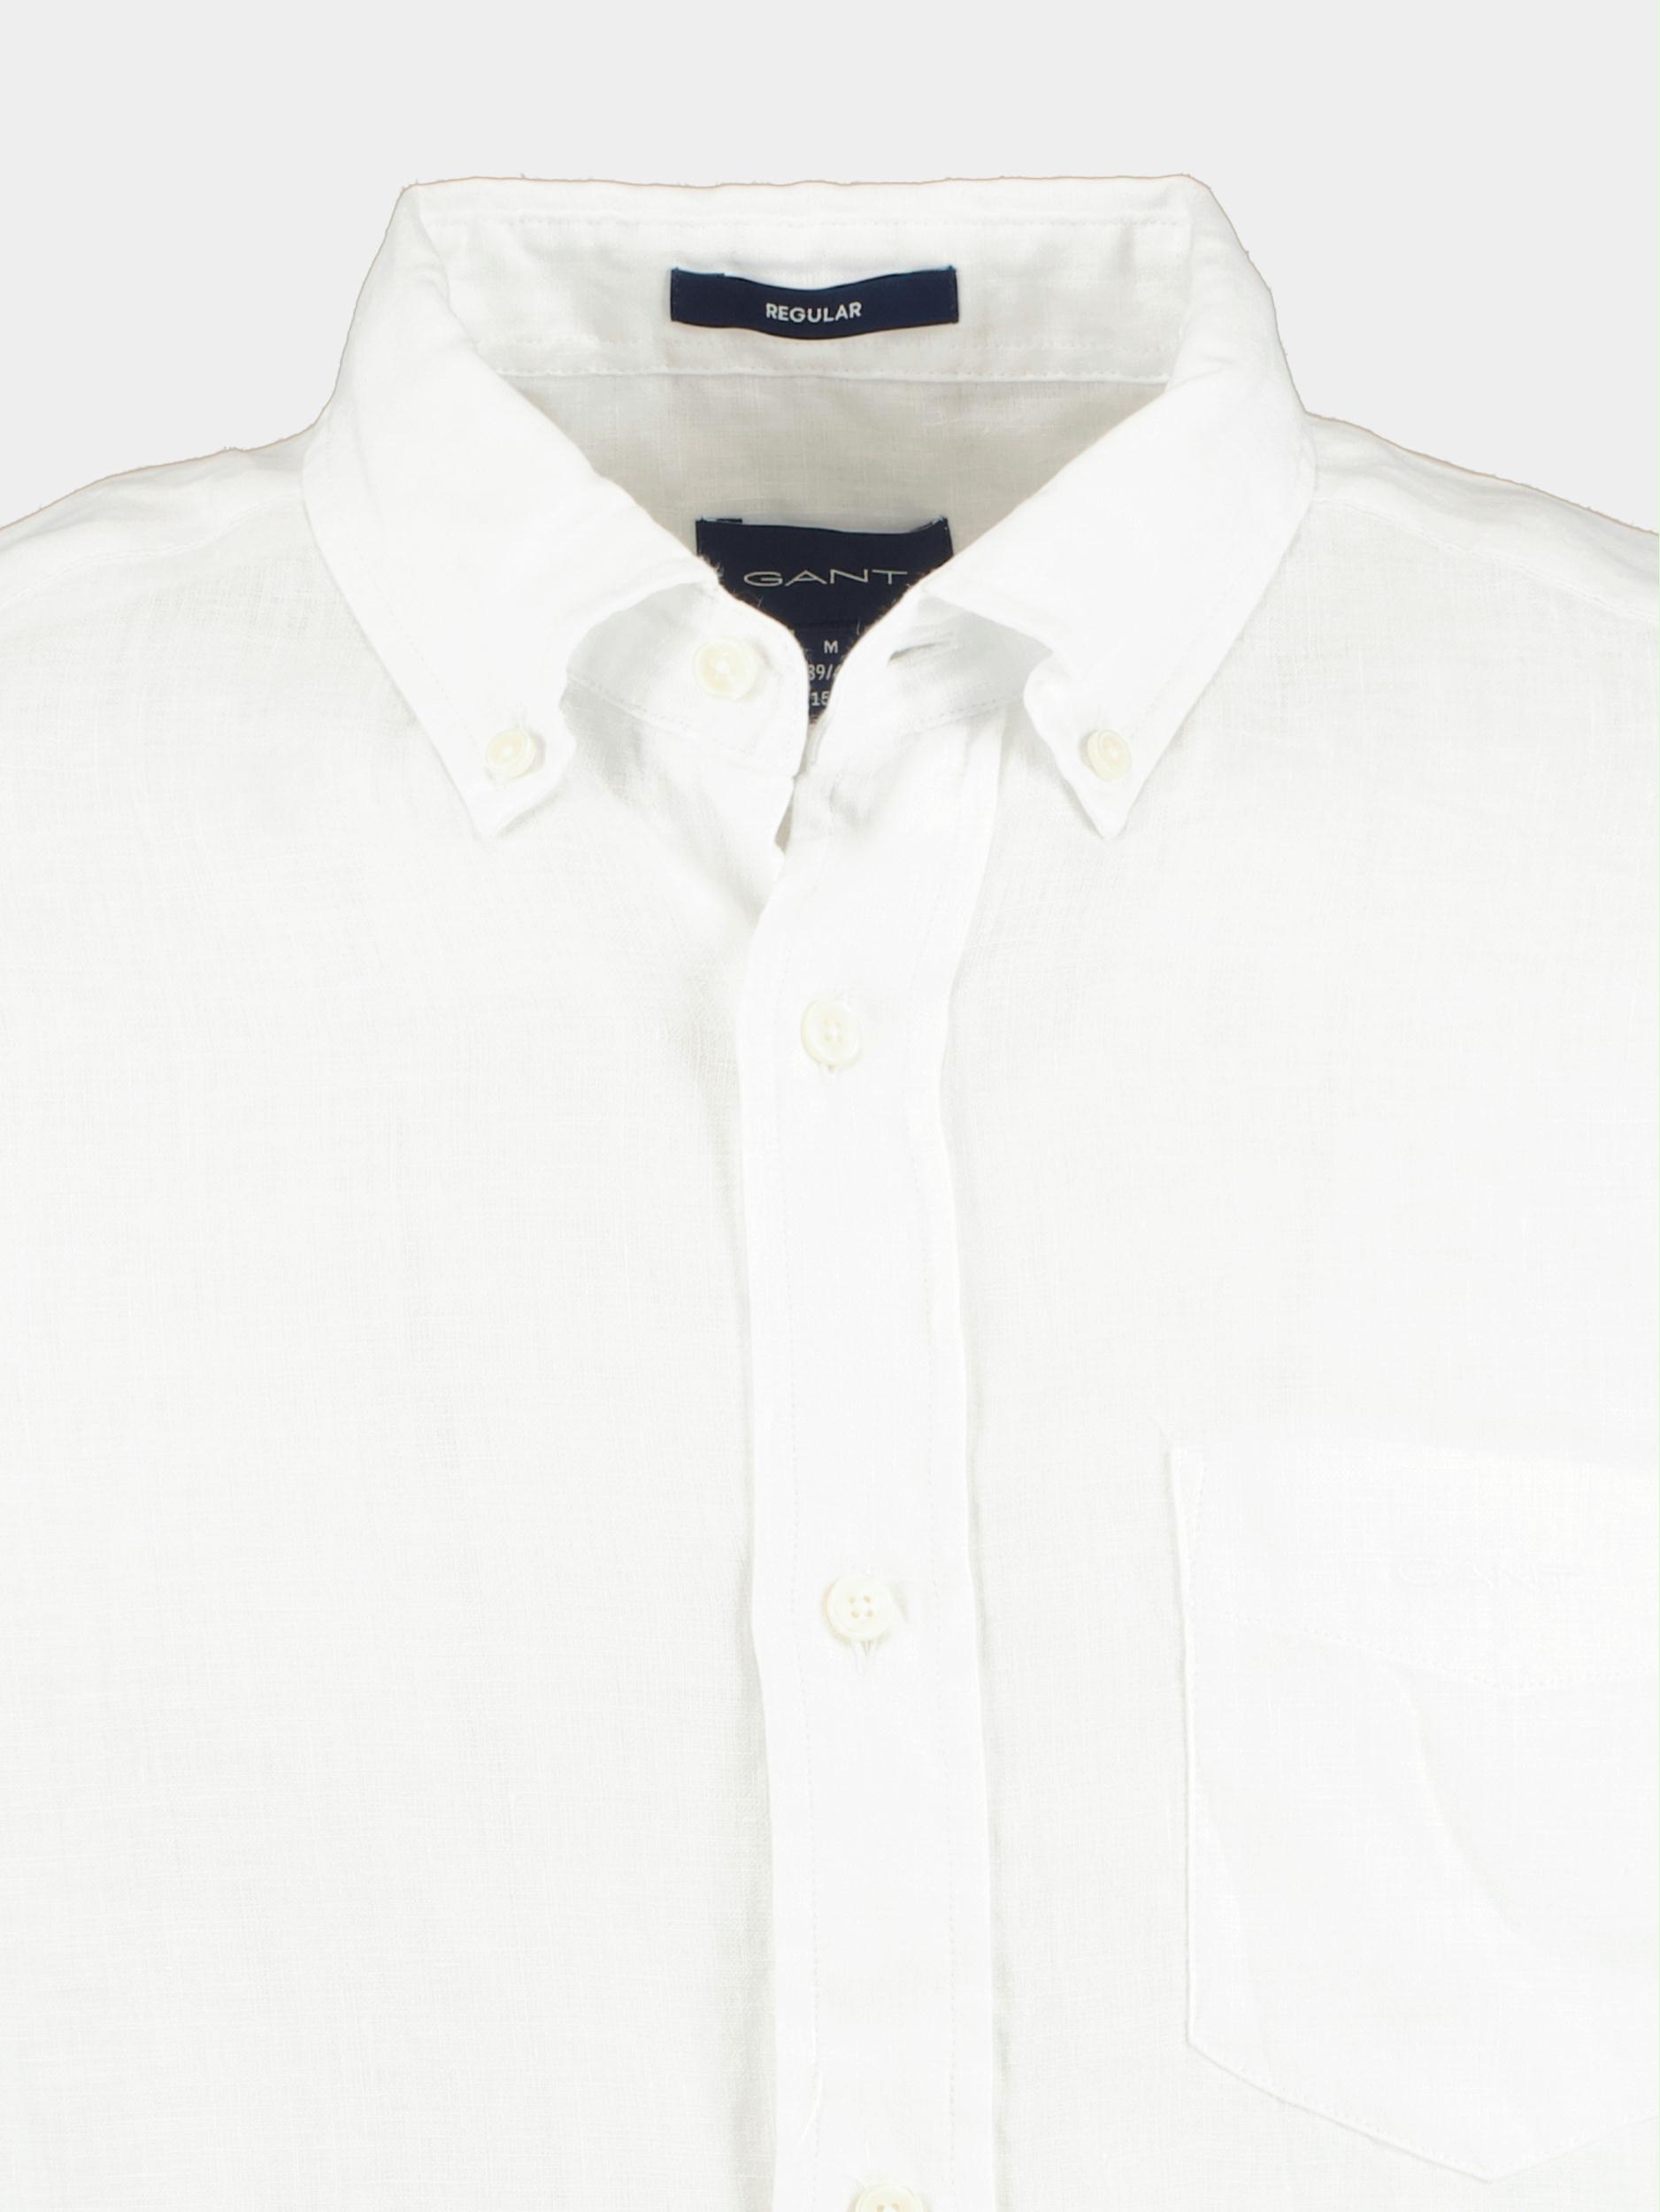 Gant Casual hemd lange mouw Wit Reg Linen Shirt 3230085/110